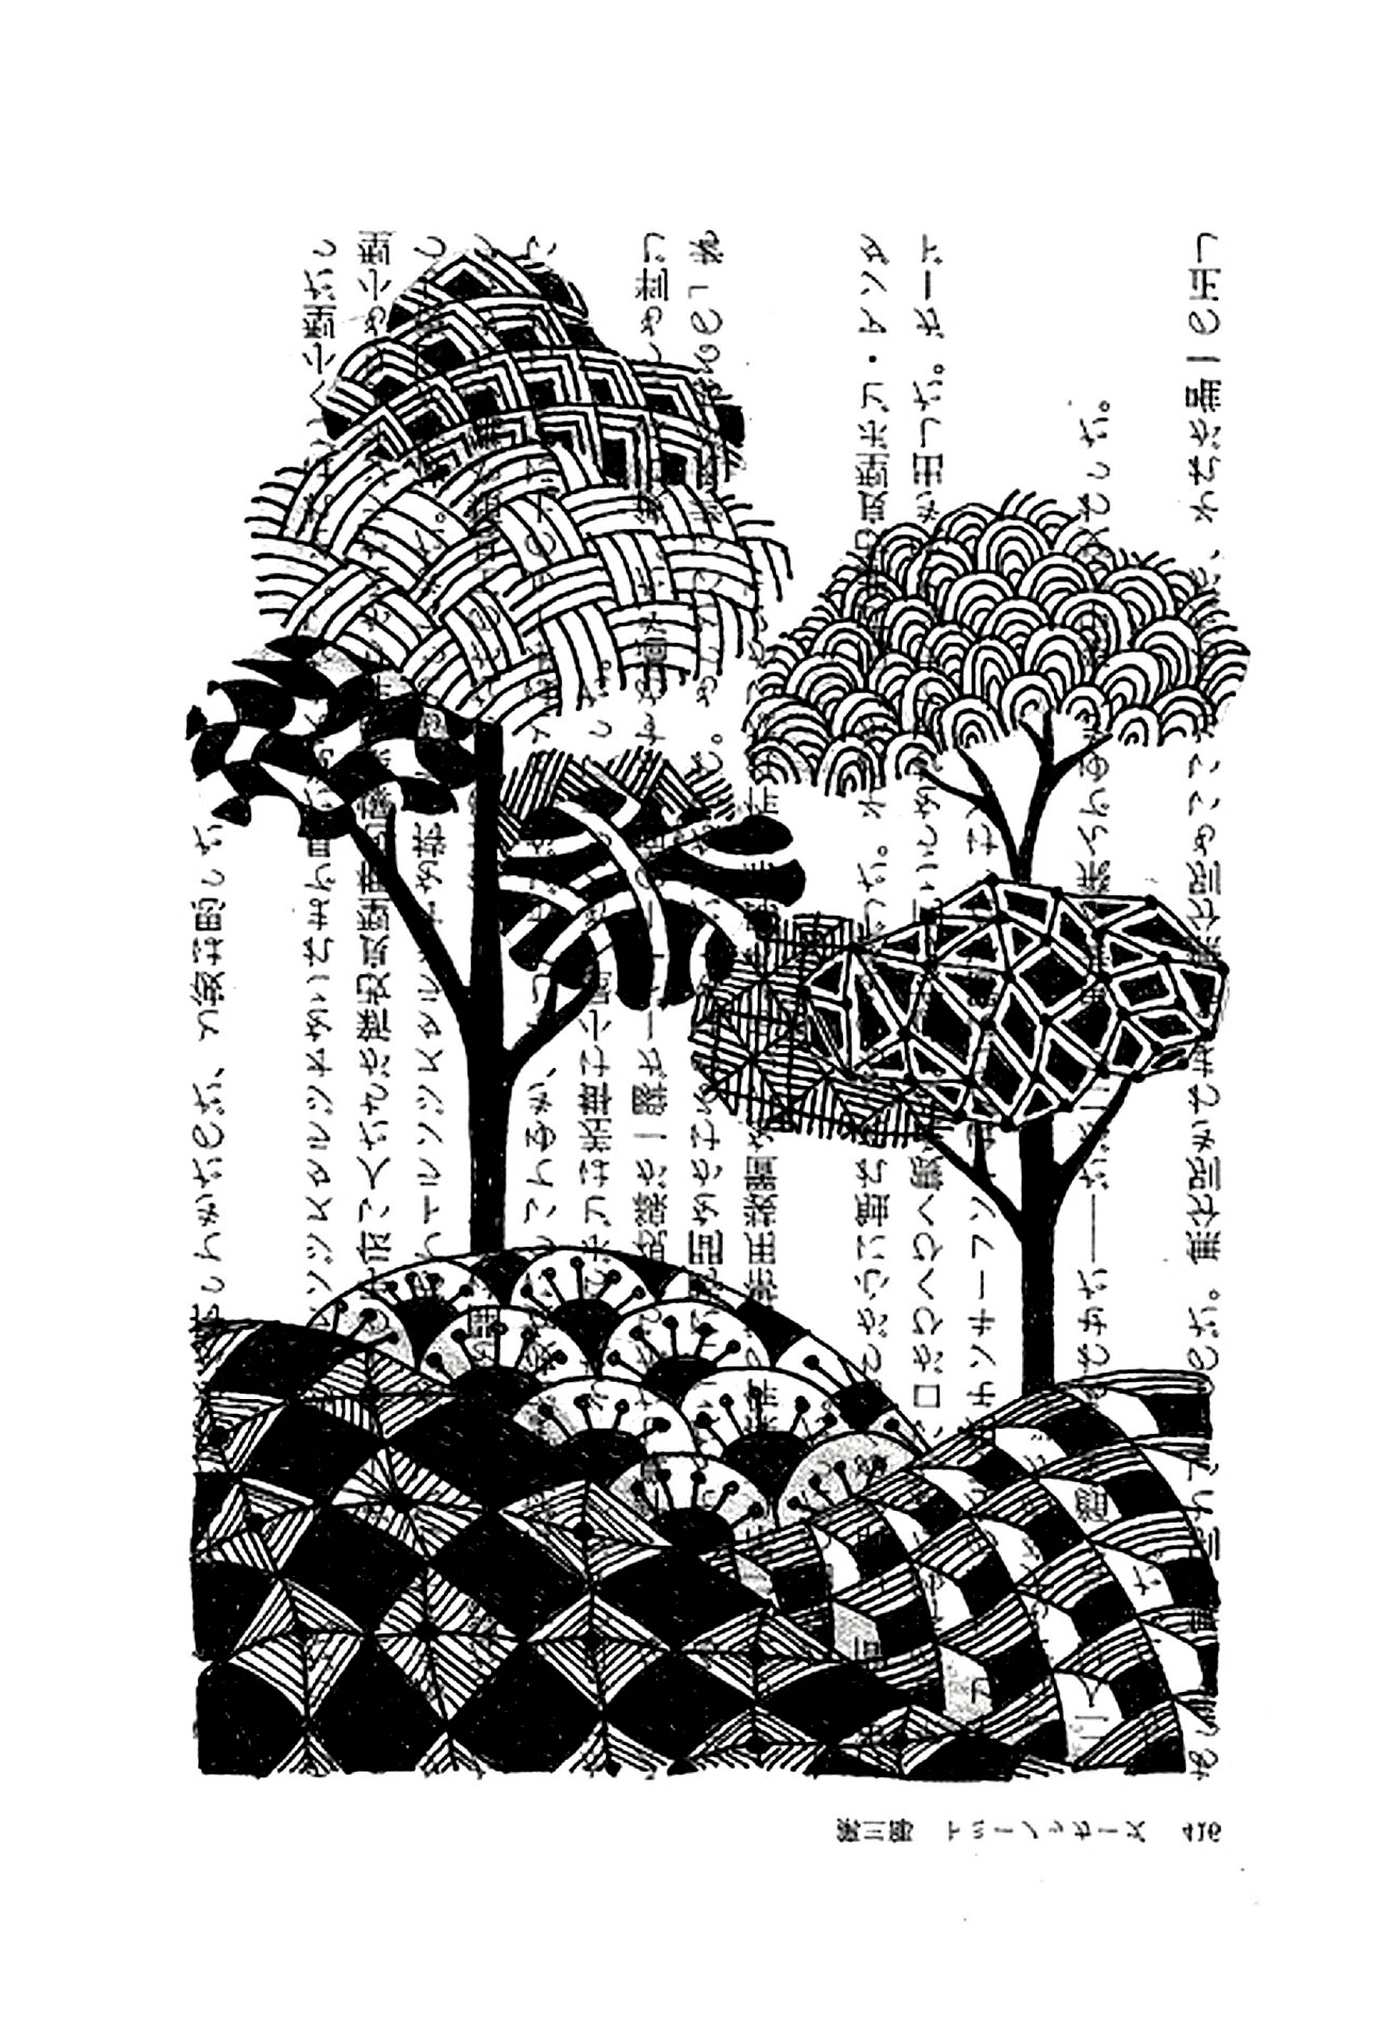  Árvores com escritos japoneses 